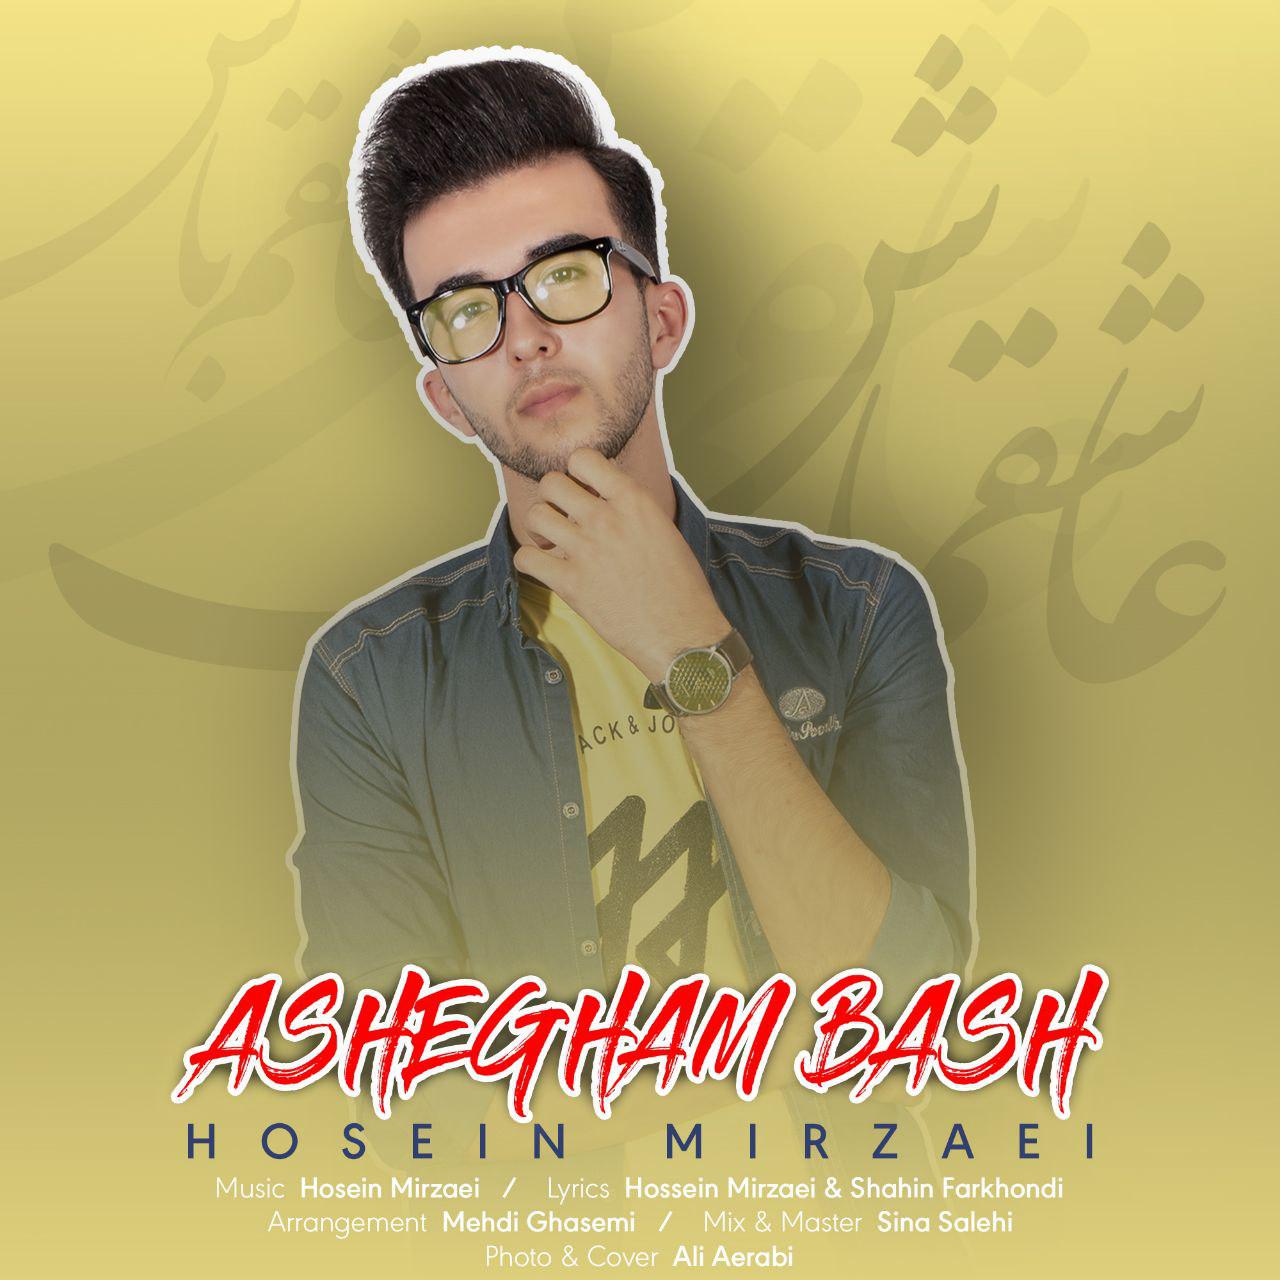 Hosein Mirzaei – Ashegham Bash